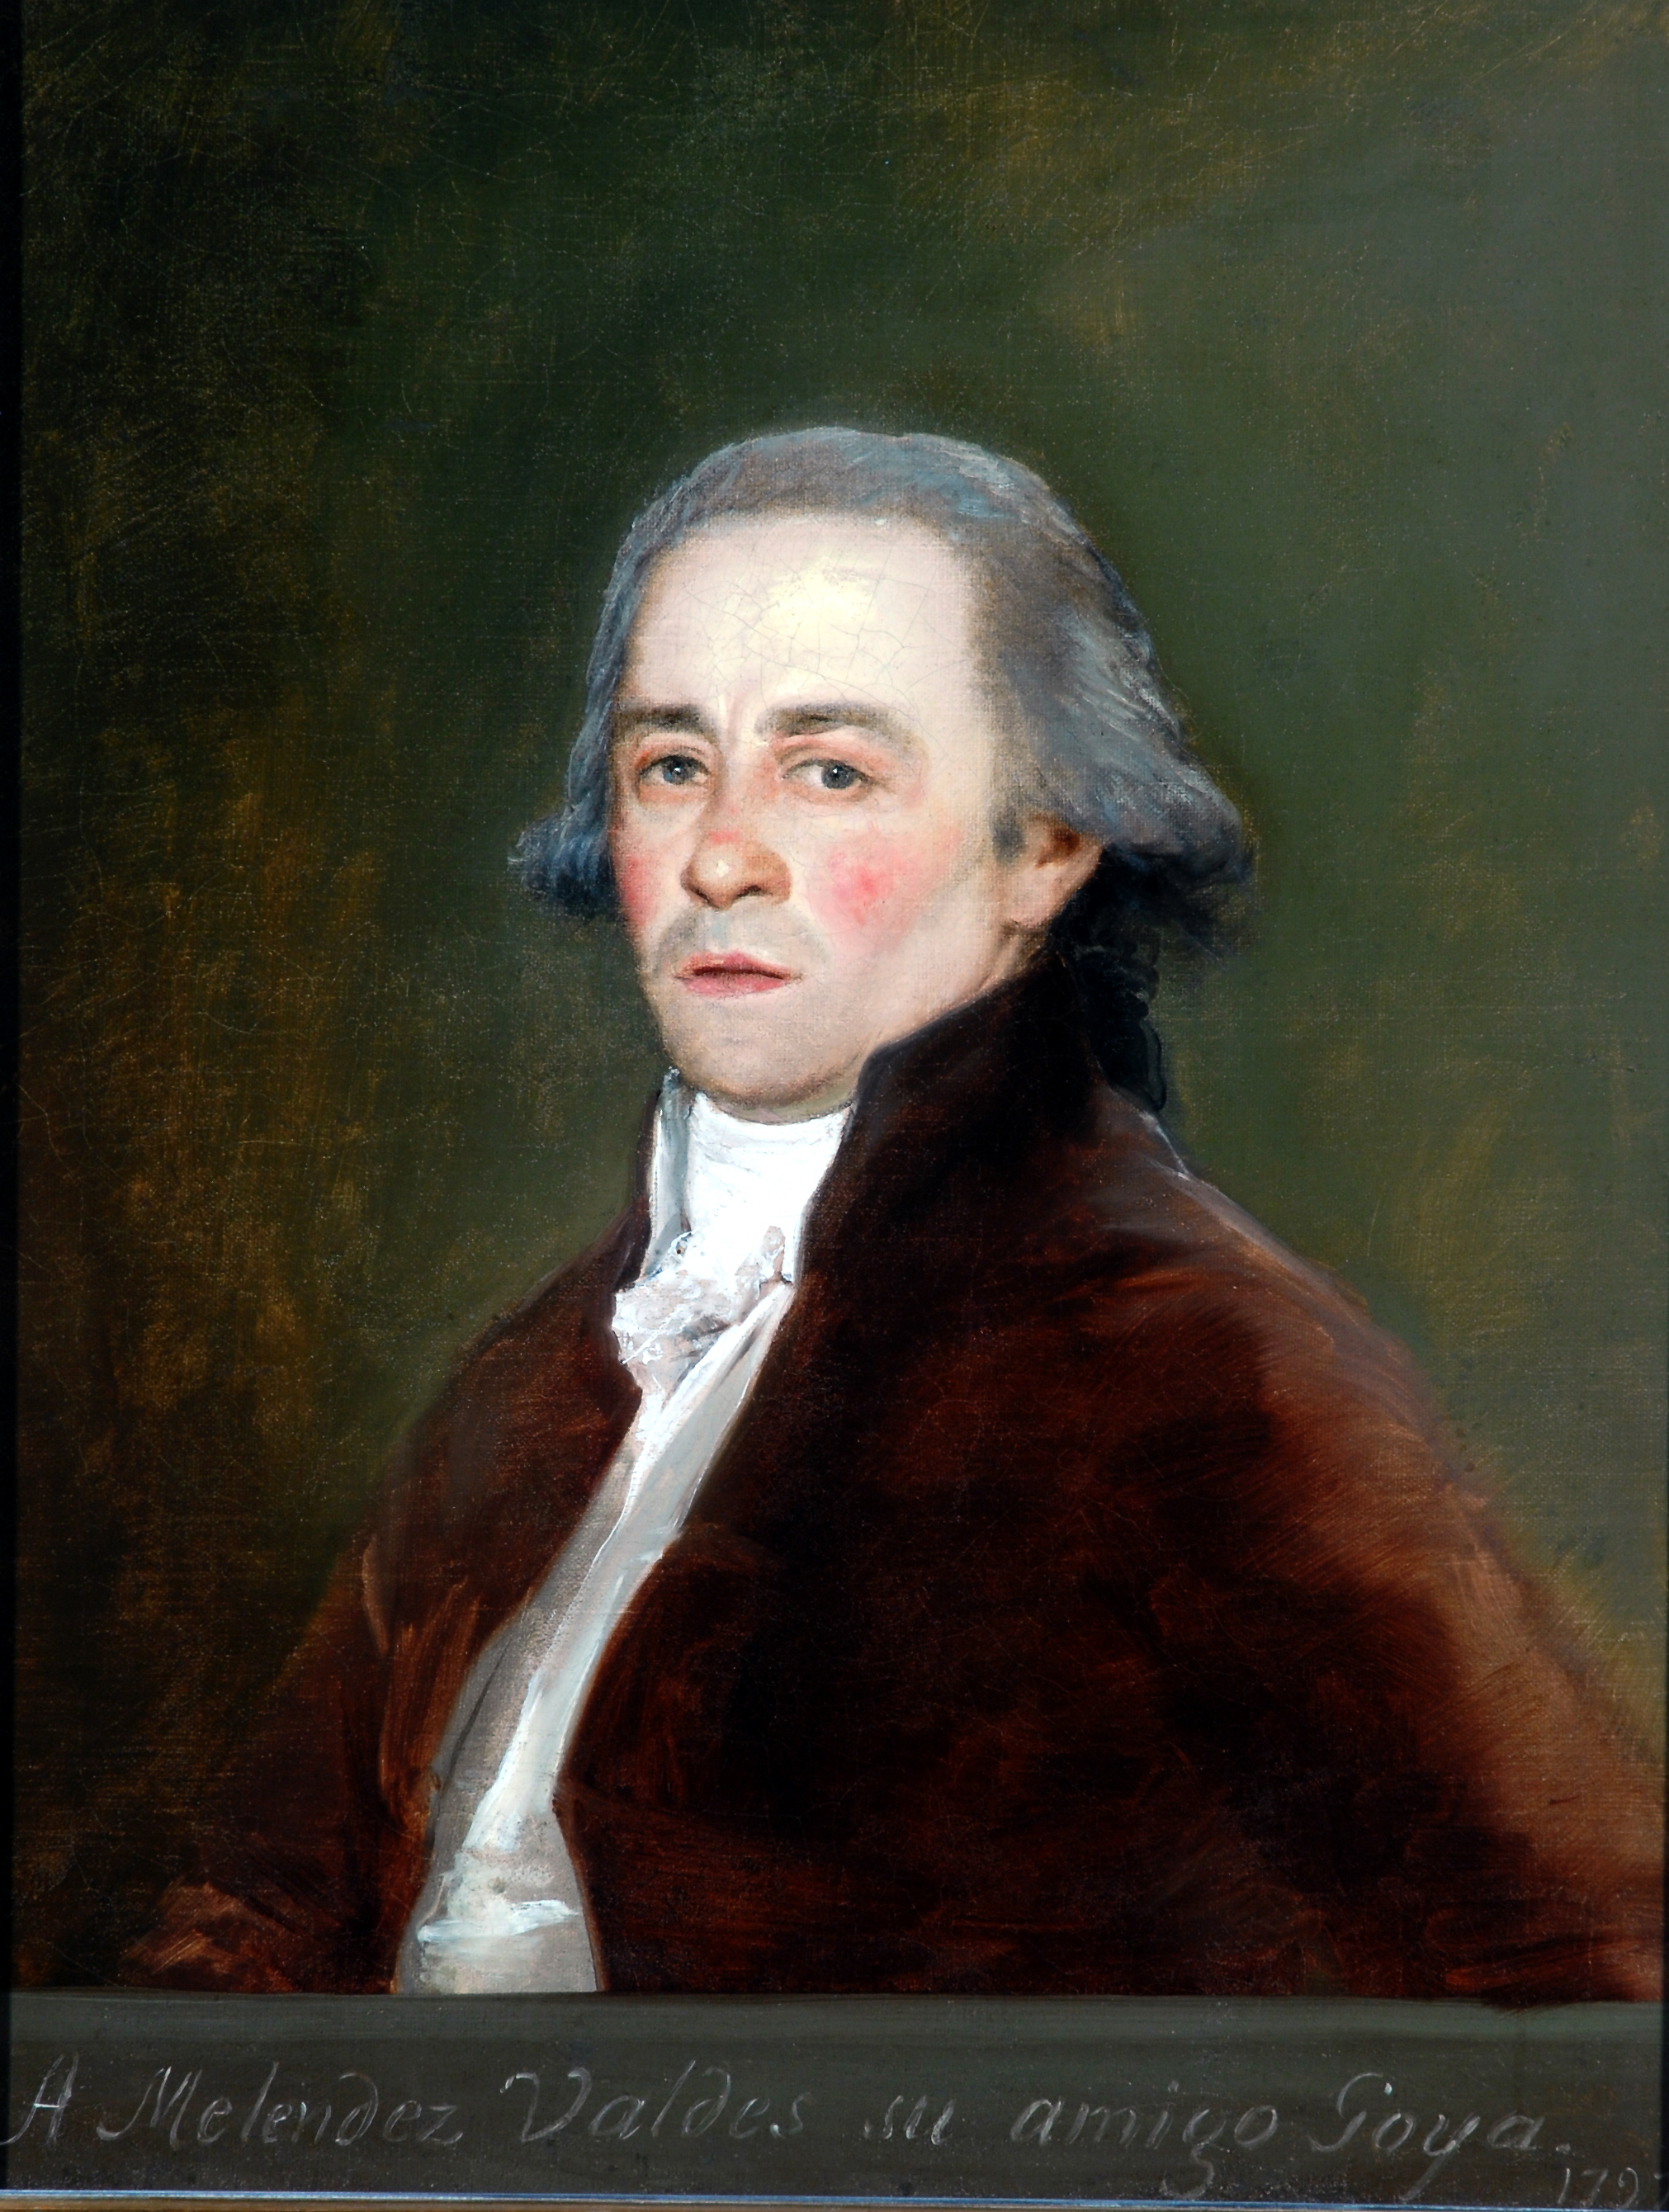 Juan Antonio Meléndez Valdés by Francisco Goya - 1797 